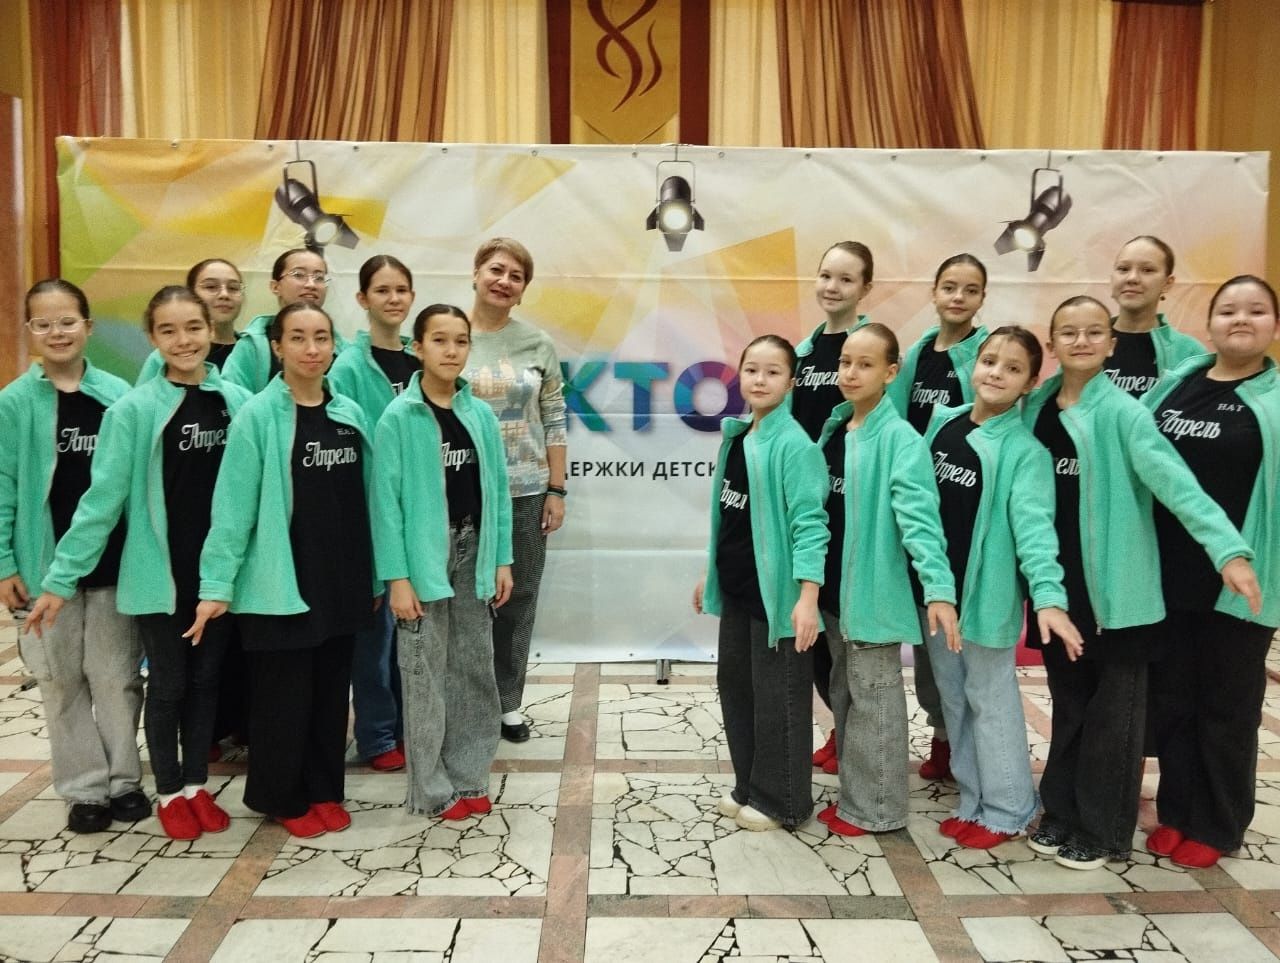 Джалильские хореографические коллективы стали лауреатами Международного фестиваля-конкурса